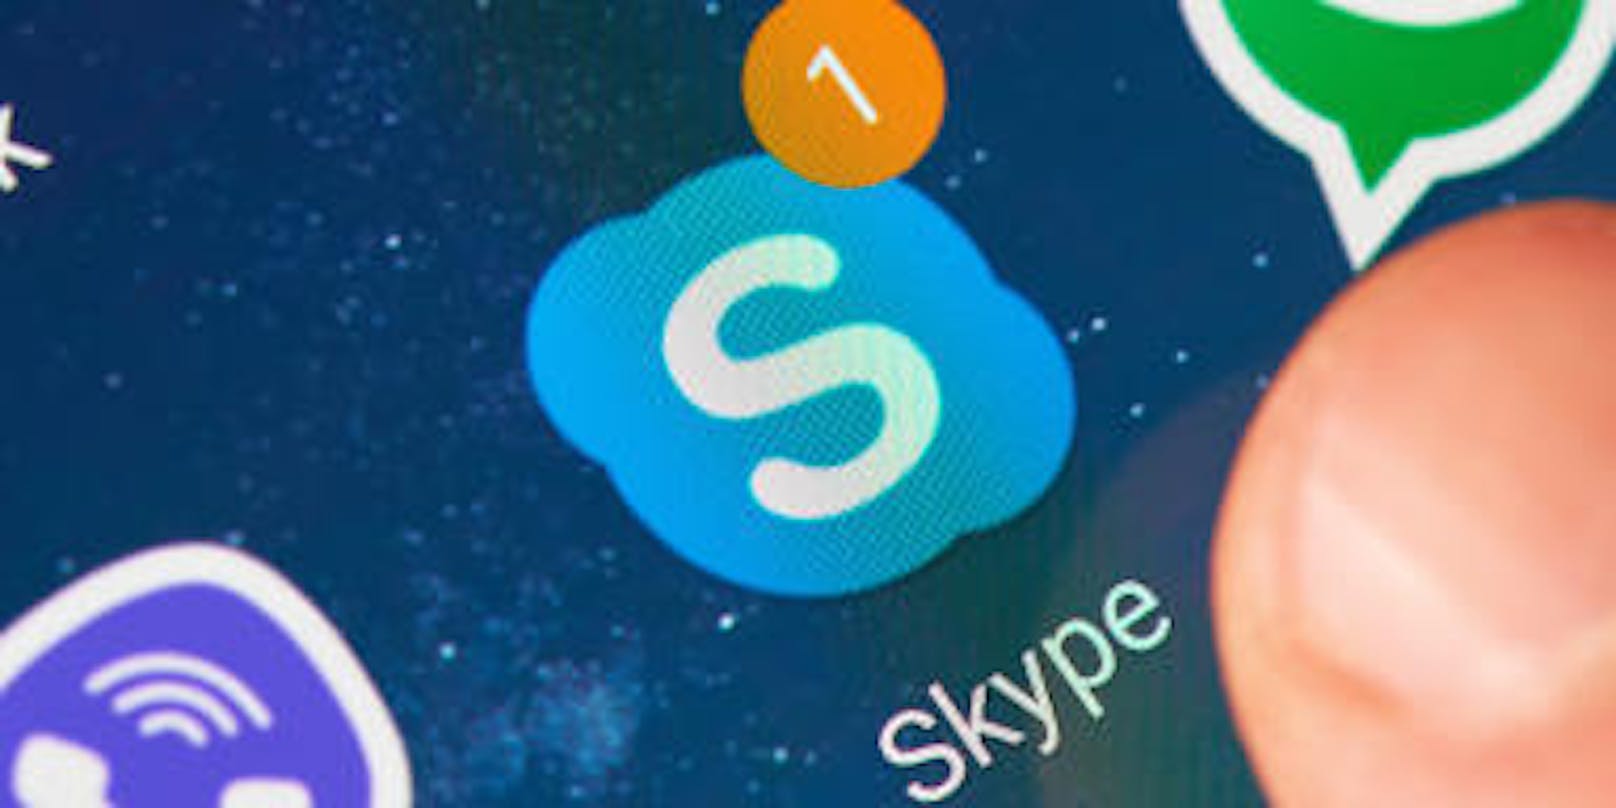 Von Microsoft beauftragte Mitarbeiter hören mit, wenn Nutzer über Skype kommunizieren oder mit der digitalen Assistentin Cortana sprechen. Dies zeigt ein Bericht von Vice.com.